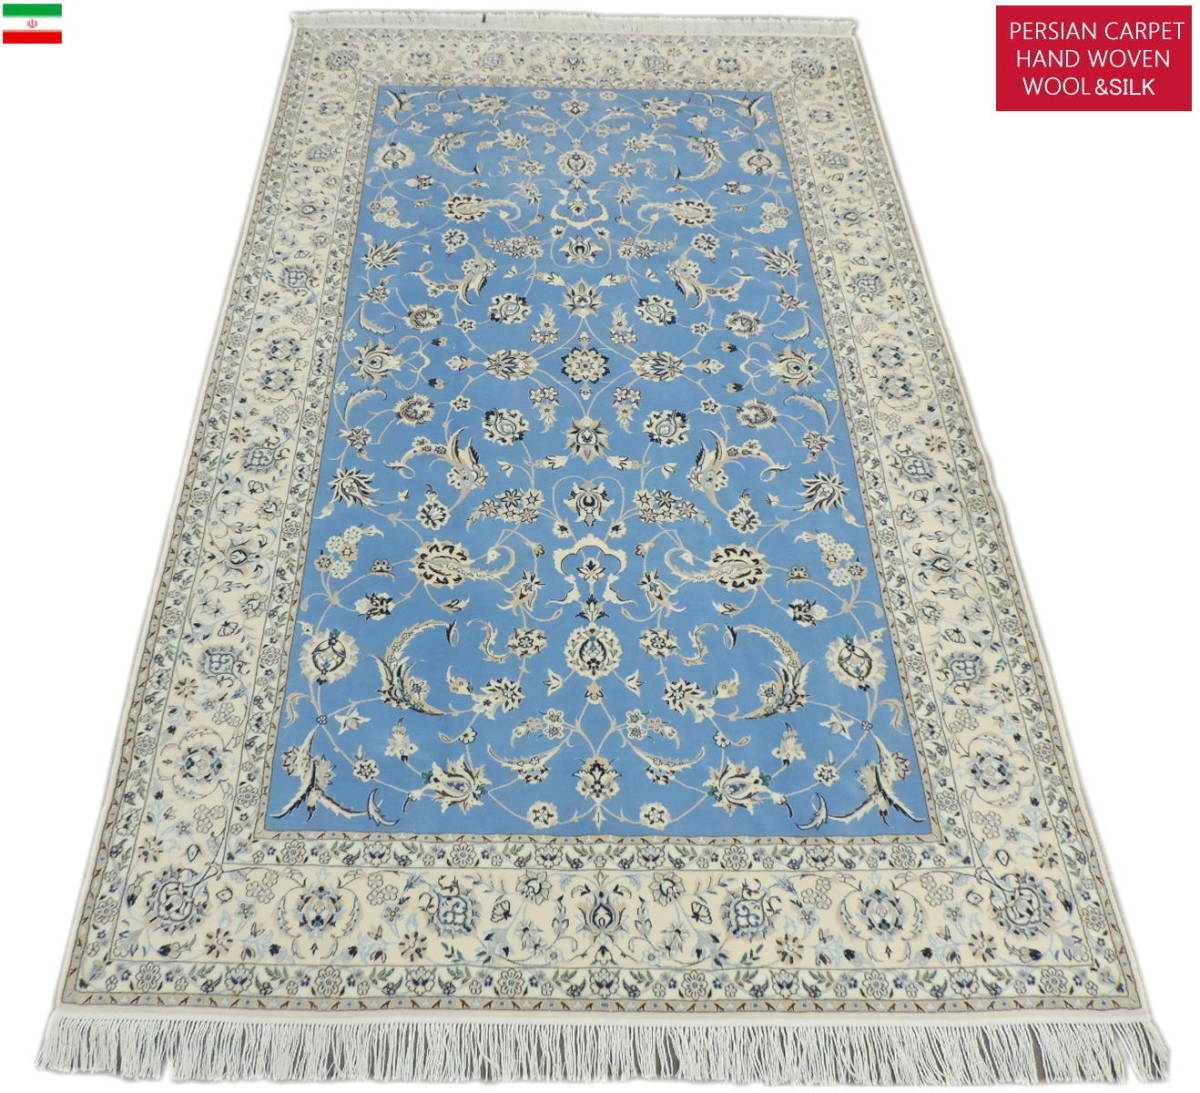 【高価値】 ナイン産 イラン ペルシャ絨毯の本場 高級 手織り ウール＆シルク ラグ カーペット ペルシャ絨毯 大型サイズ 直輸入 本物保証 275cm×168cm カーペット一般